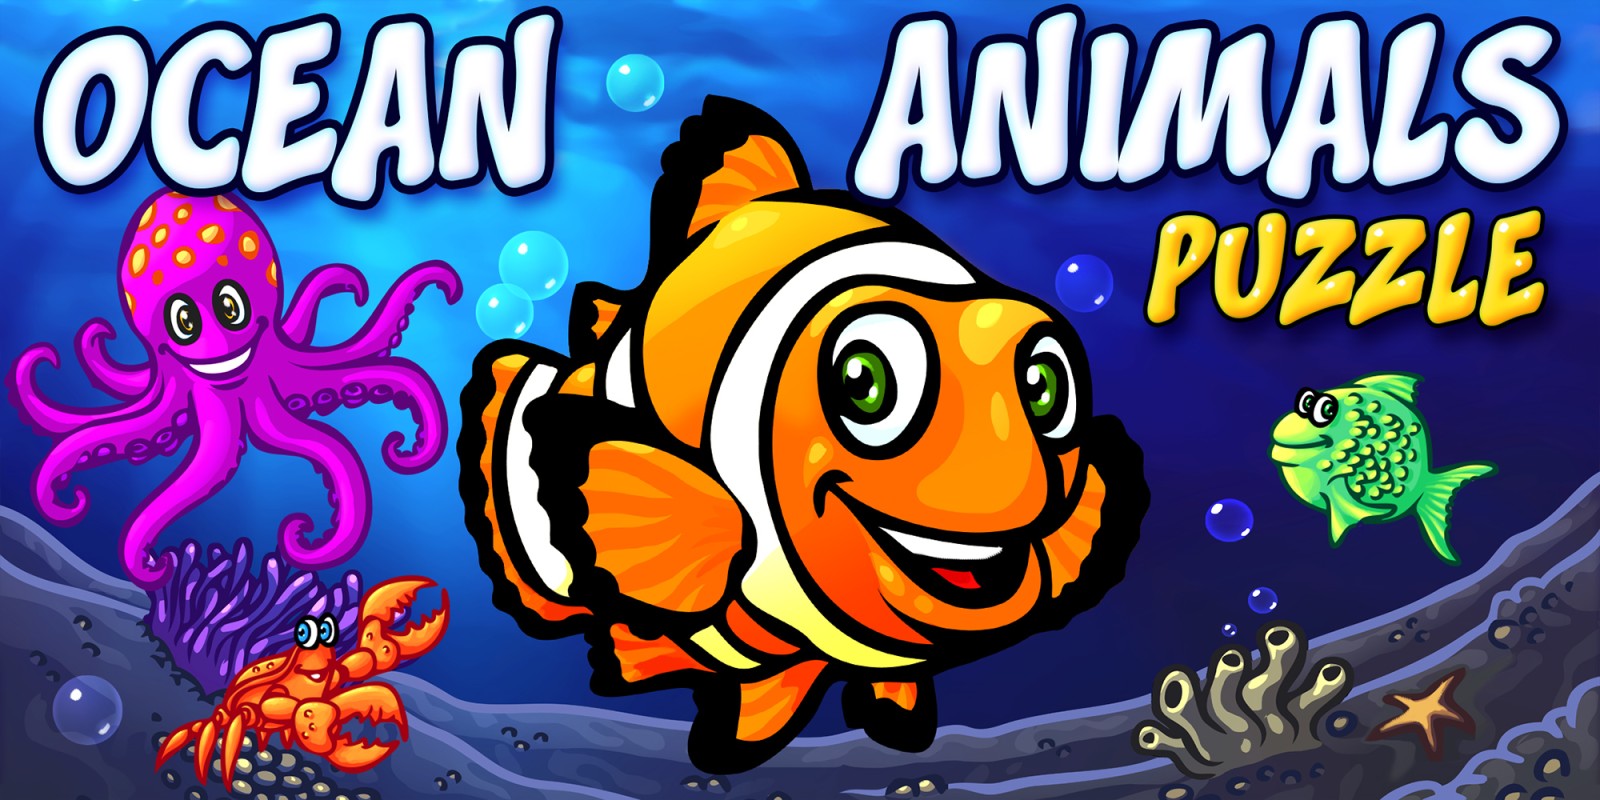 Ocean Animals Puzzle - juego de aprendizaje de rompecabezas de animales del océano preescolar para niños y niños pequeños